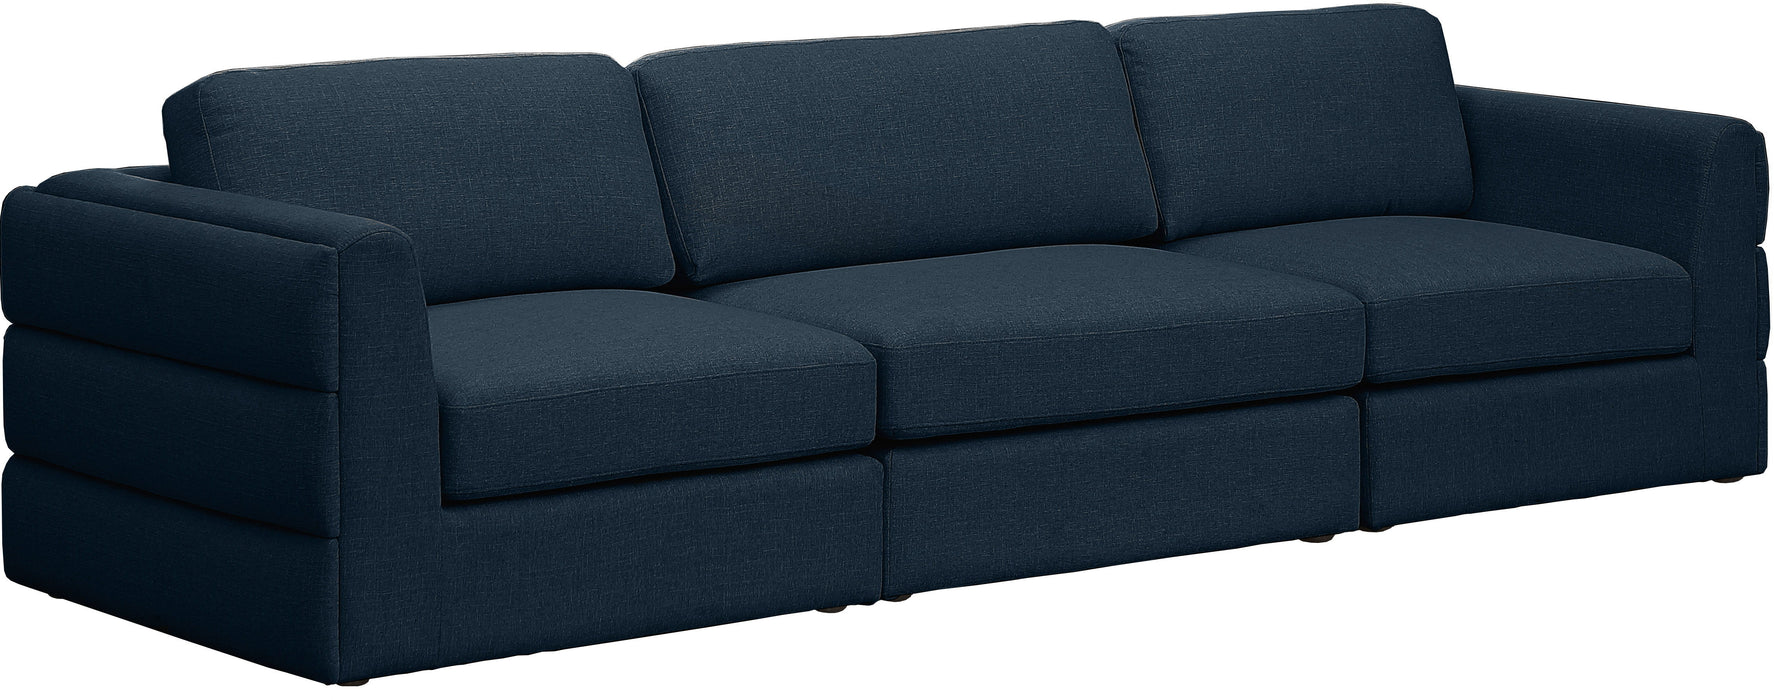 Beckham - 3 Seats Modular Sofa